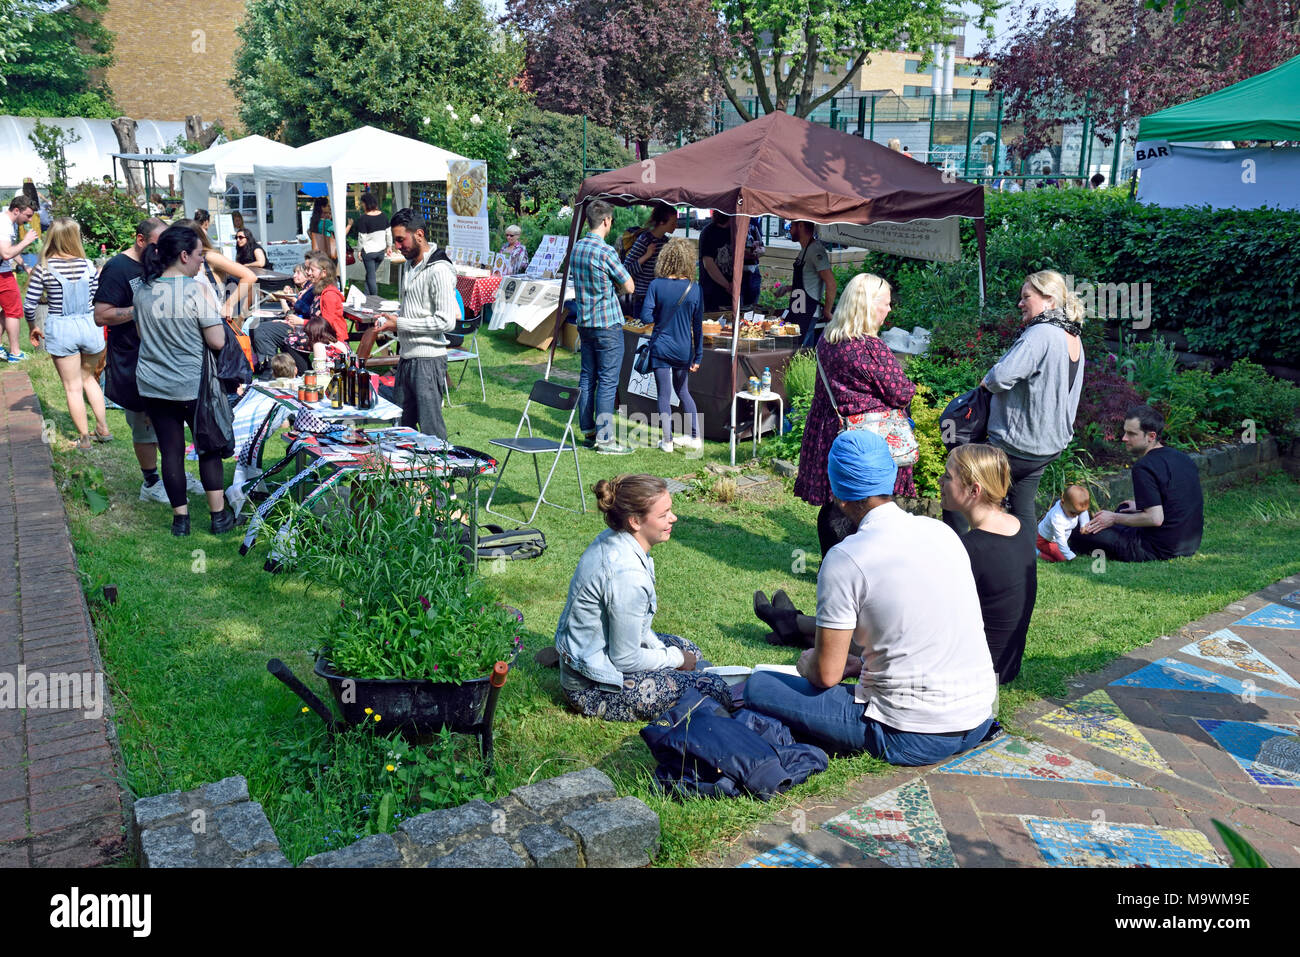 Vegan Fair, Stände, Essen und Menschen, Projekt Calthorpe, Gray's Inn Road, Condon Stadtteil Camden, England, Großbritannien Großbritannien Stockfoto